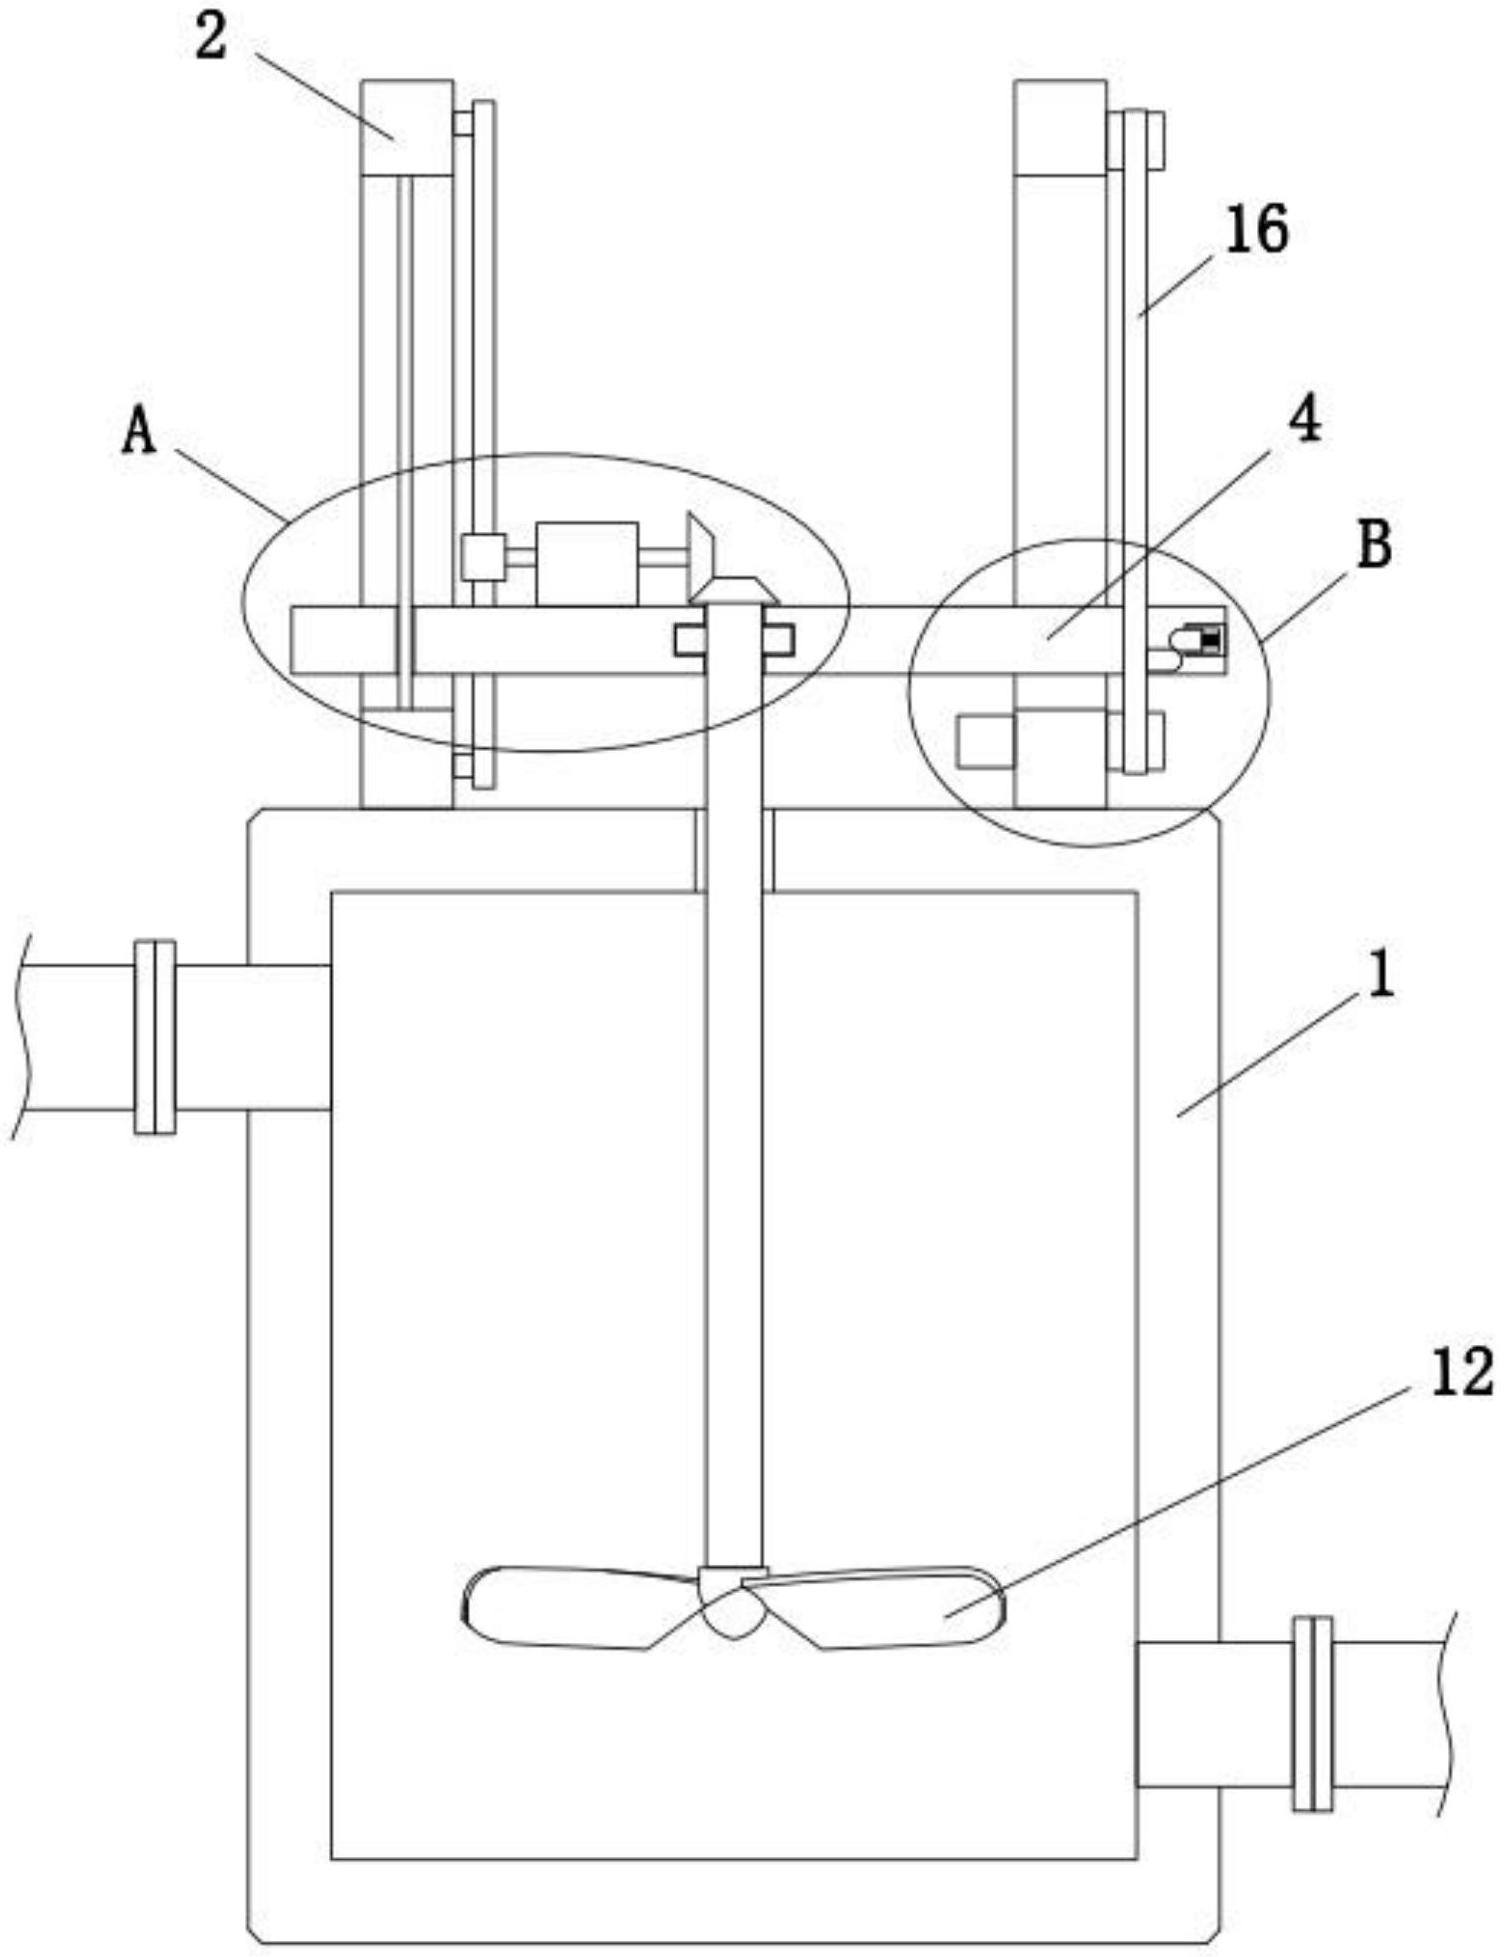 一种生活污水分流式处理装置专利图